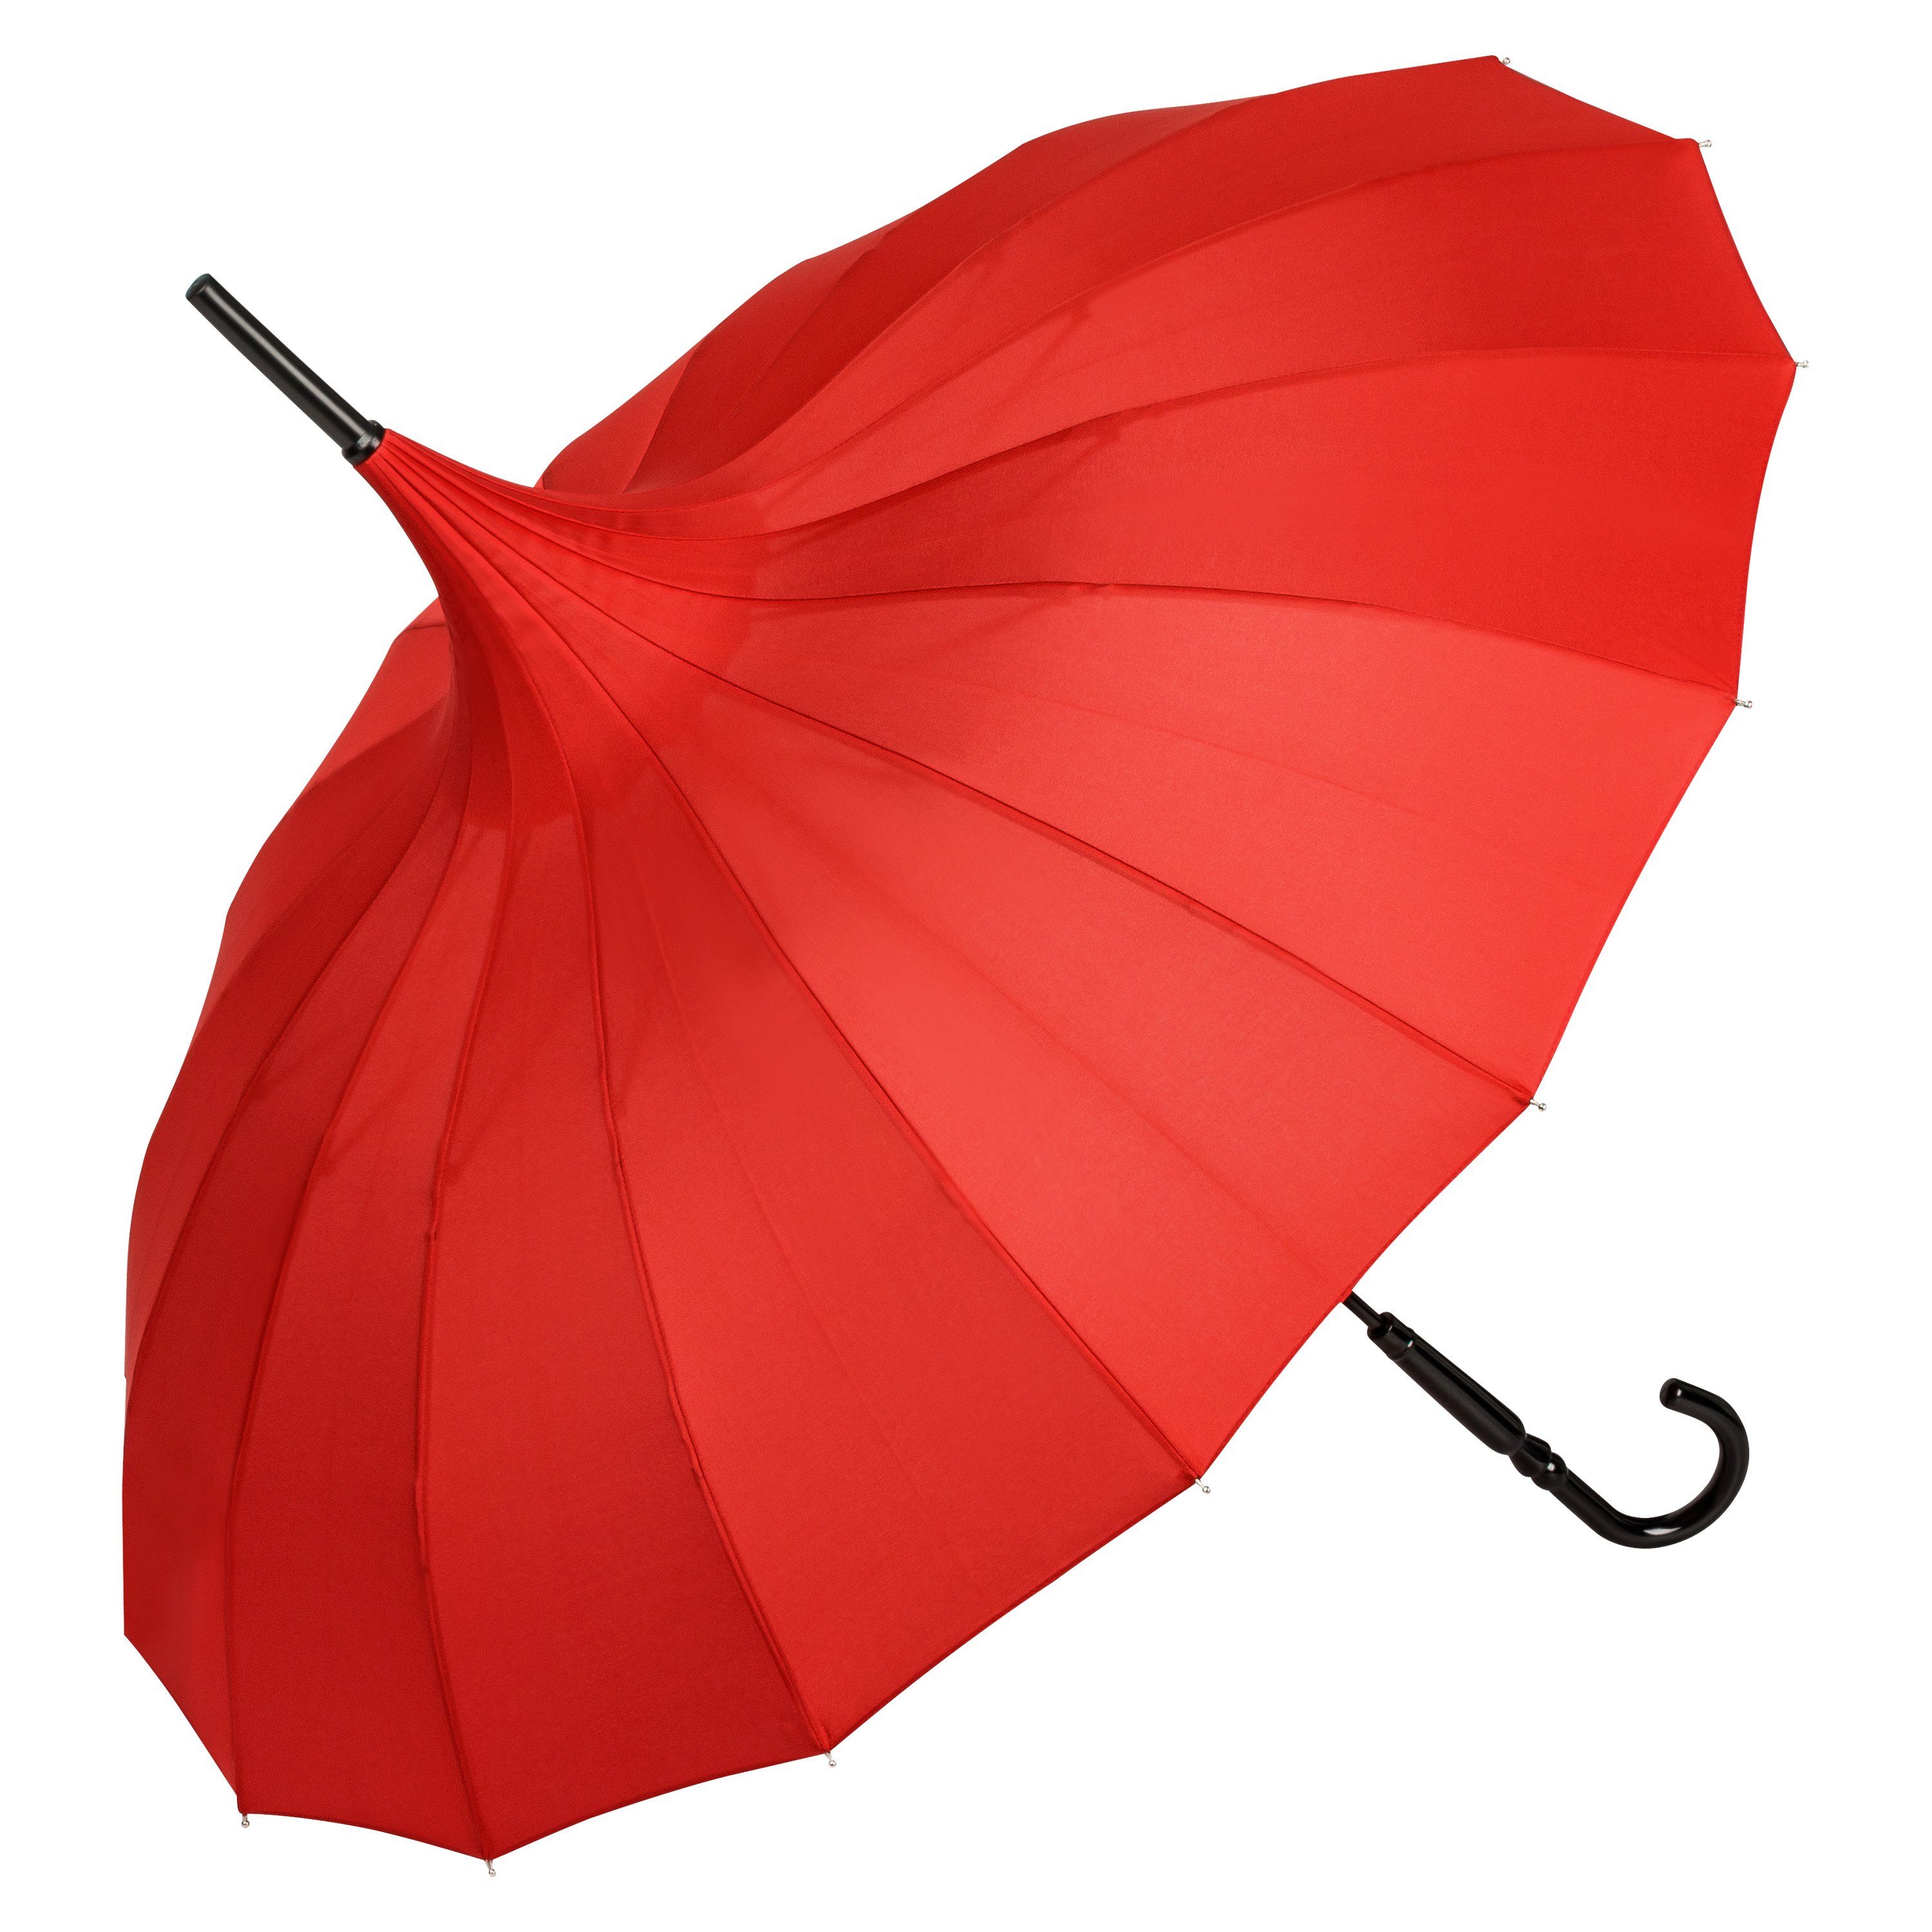 von Lilienfeld Stockregenschirm Regenschirm Sonnenschirm Pagode Charlotte, Pagodenform mit 16 Segmenten rot